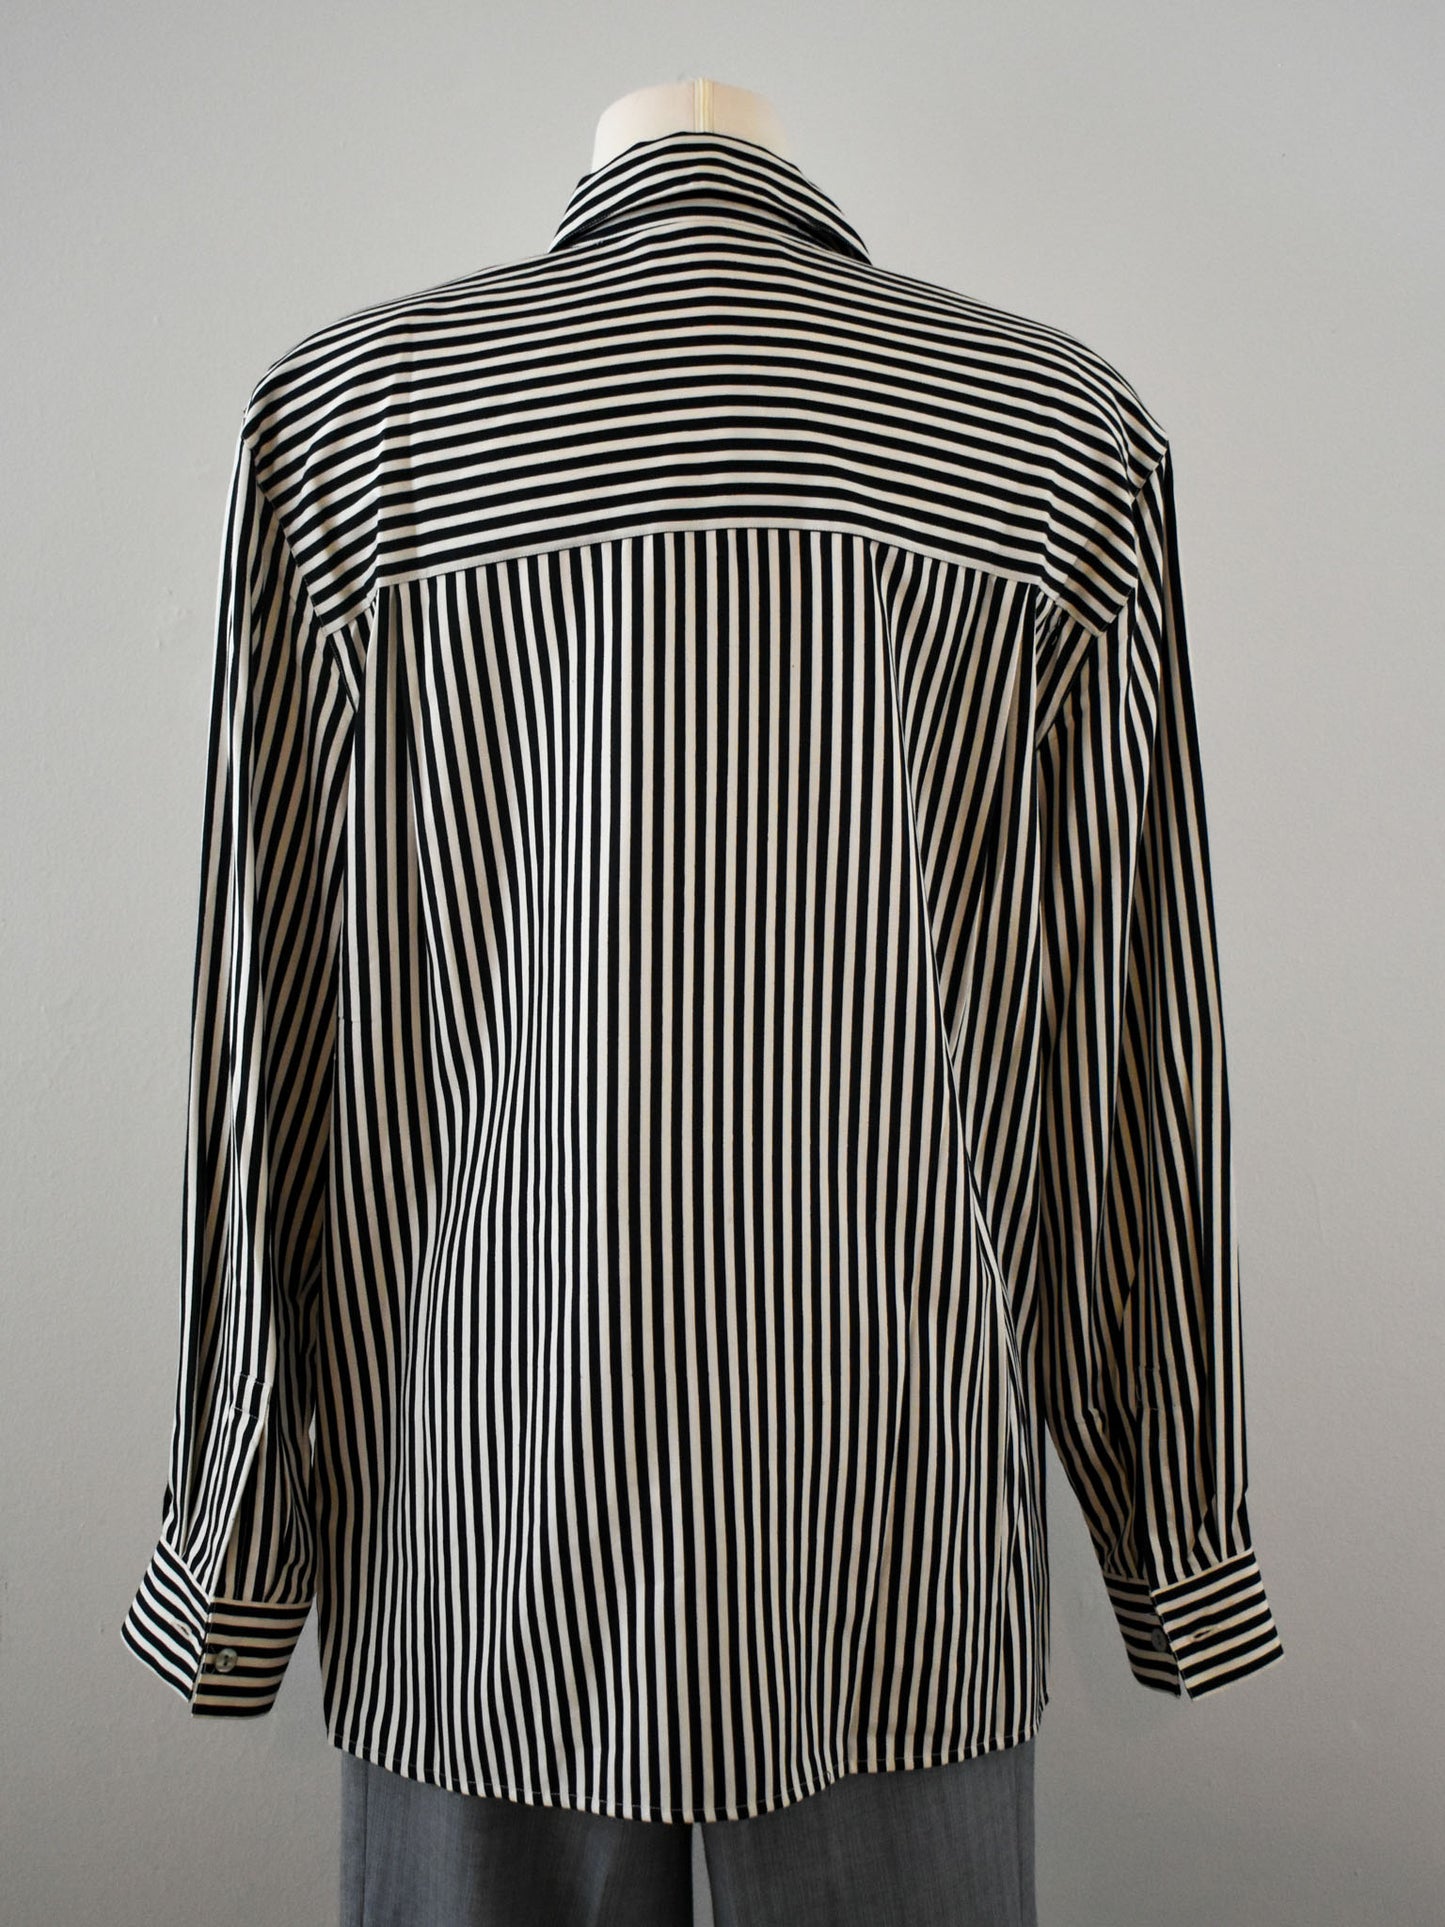 Striped Shirt (L)